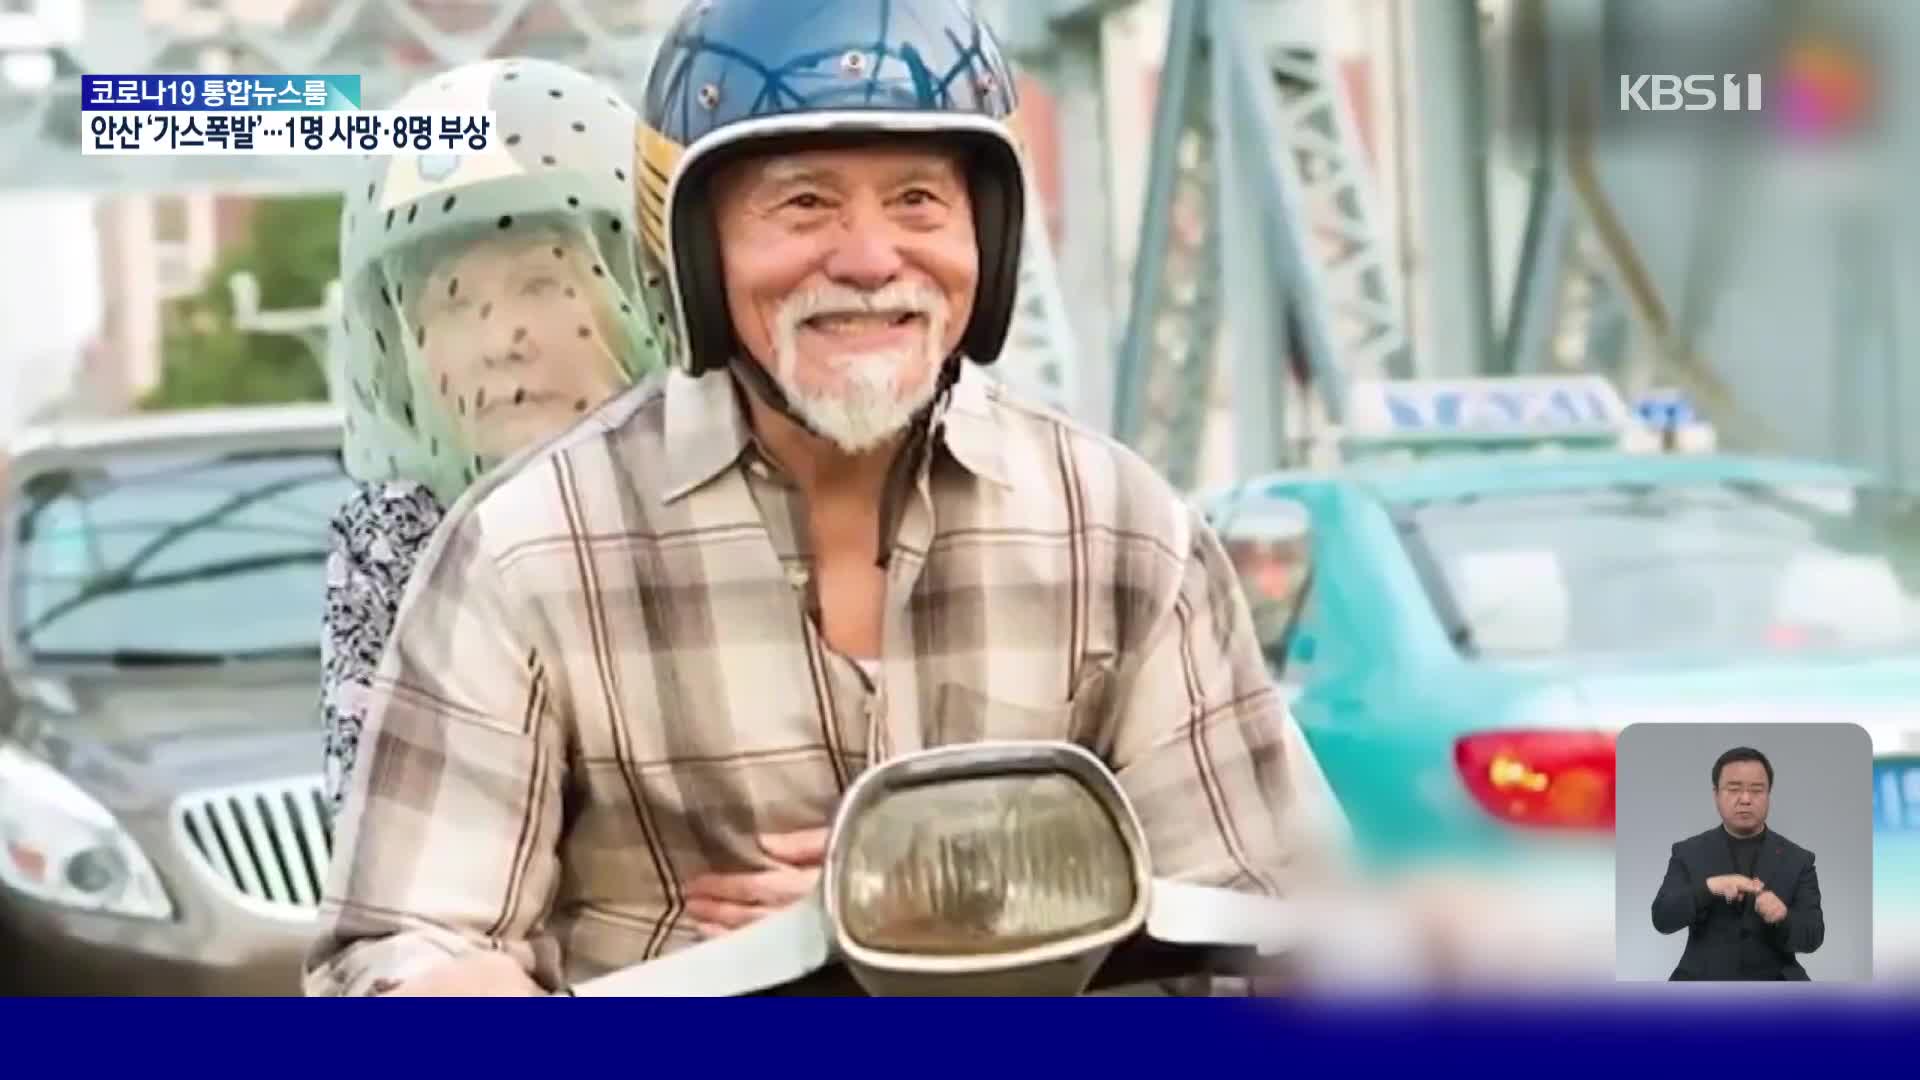 중국의 열정 할아버지, 85살에 비행기 조종